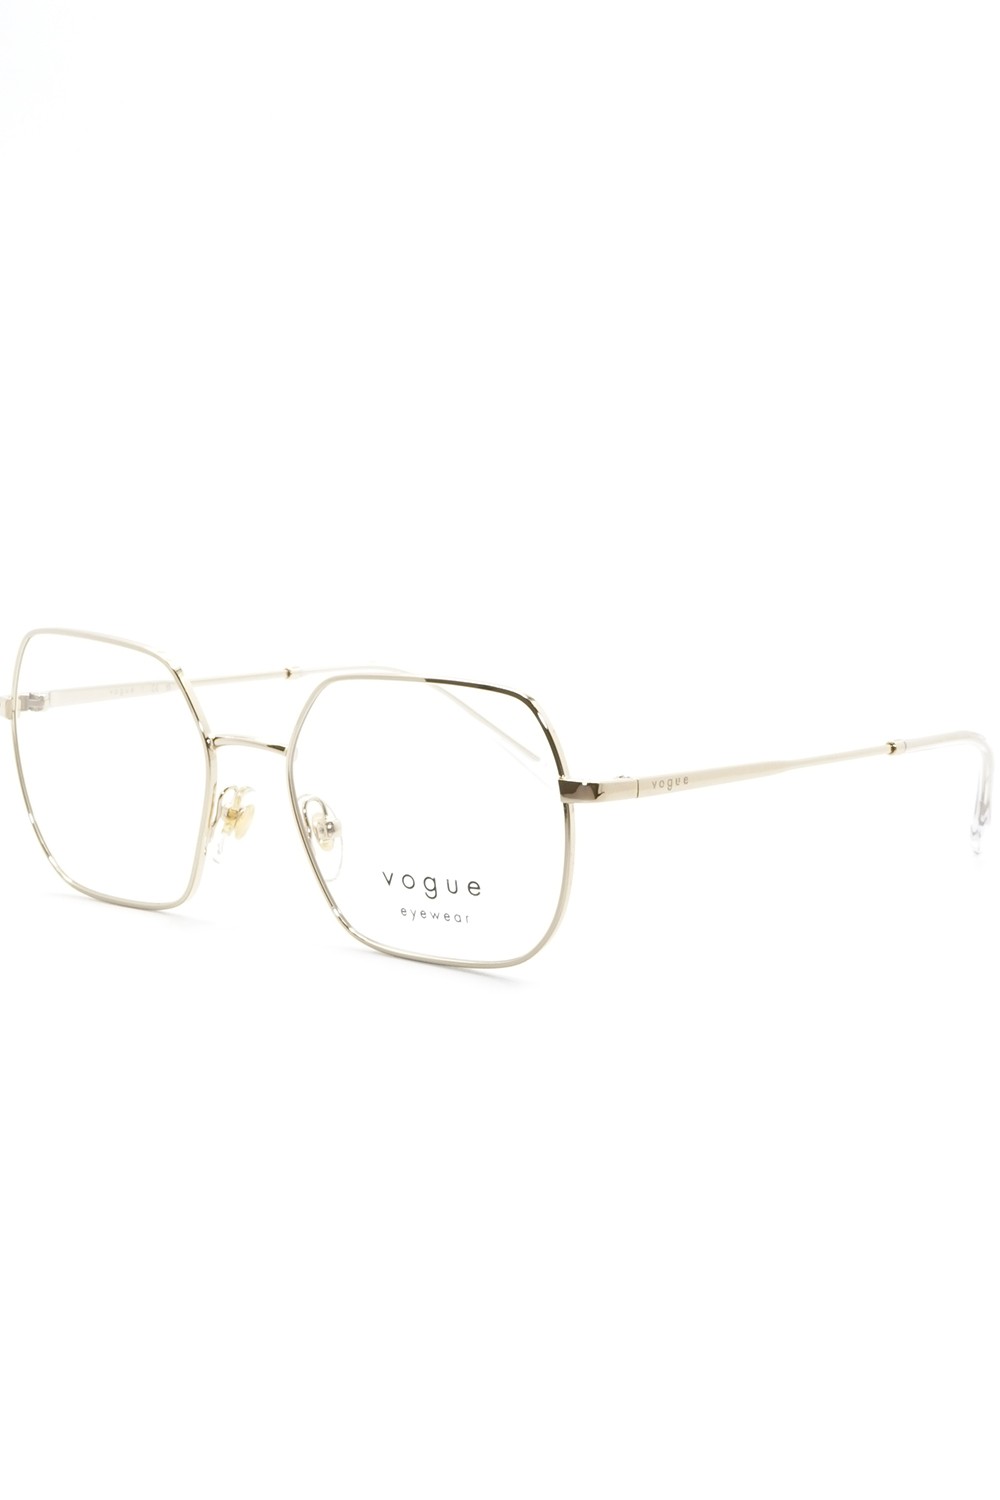 Vogue - Occhiali da vista in metallo squadrati per donna oro - VO4253 848